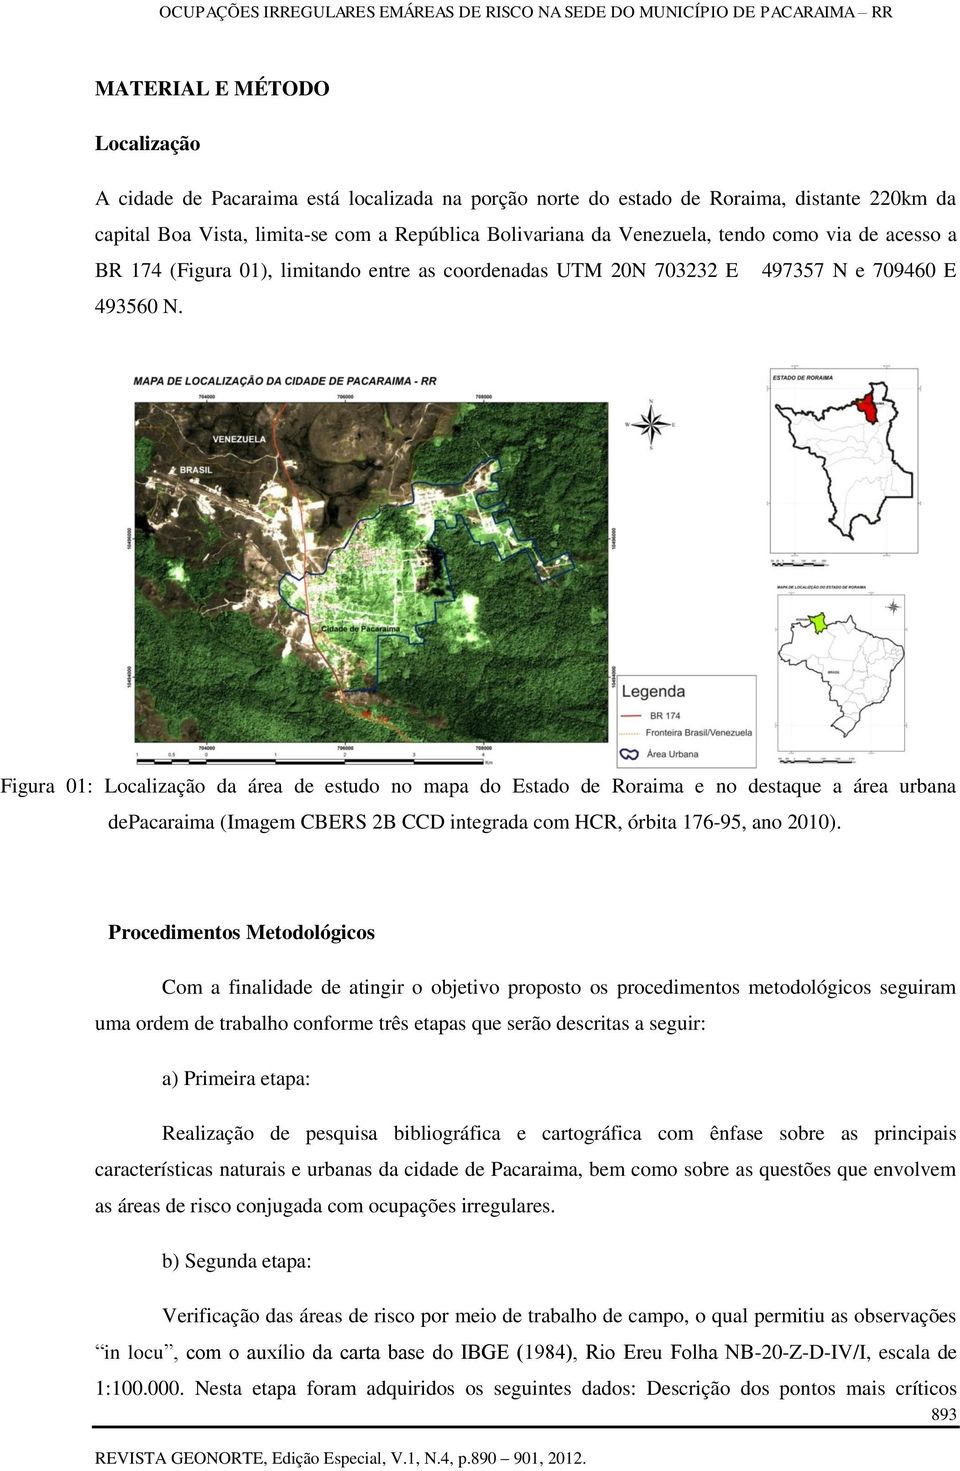 Figura 01: Localização da área de estudo no mapa do Estado de Roraima e no destaque a área urbana depacaraima (Imagem CBERS 2B CCD integrada com HCR, órbita 176-95, ano 2010).